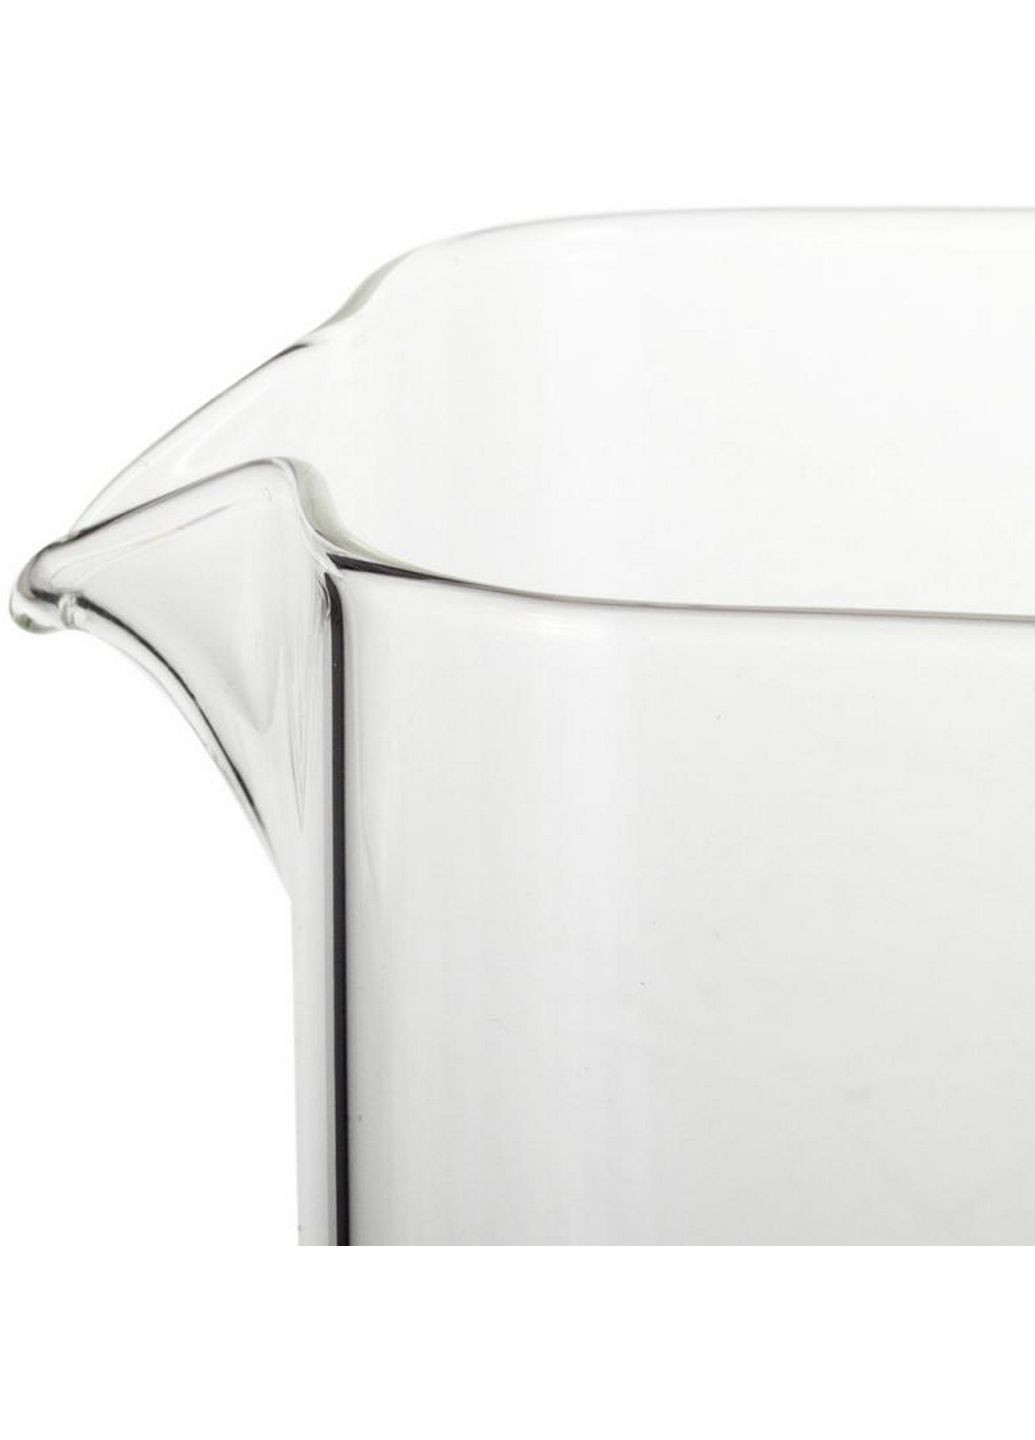 Чайник стеклянный заварочный со съемным ситечком Ofenbach (282583479)